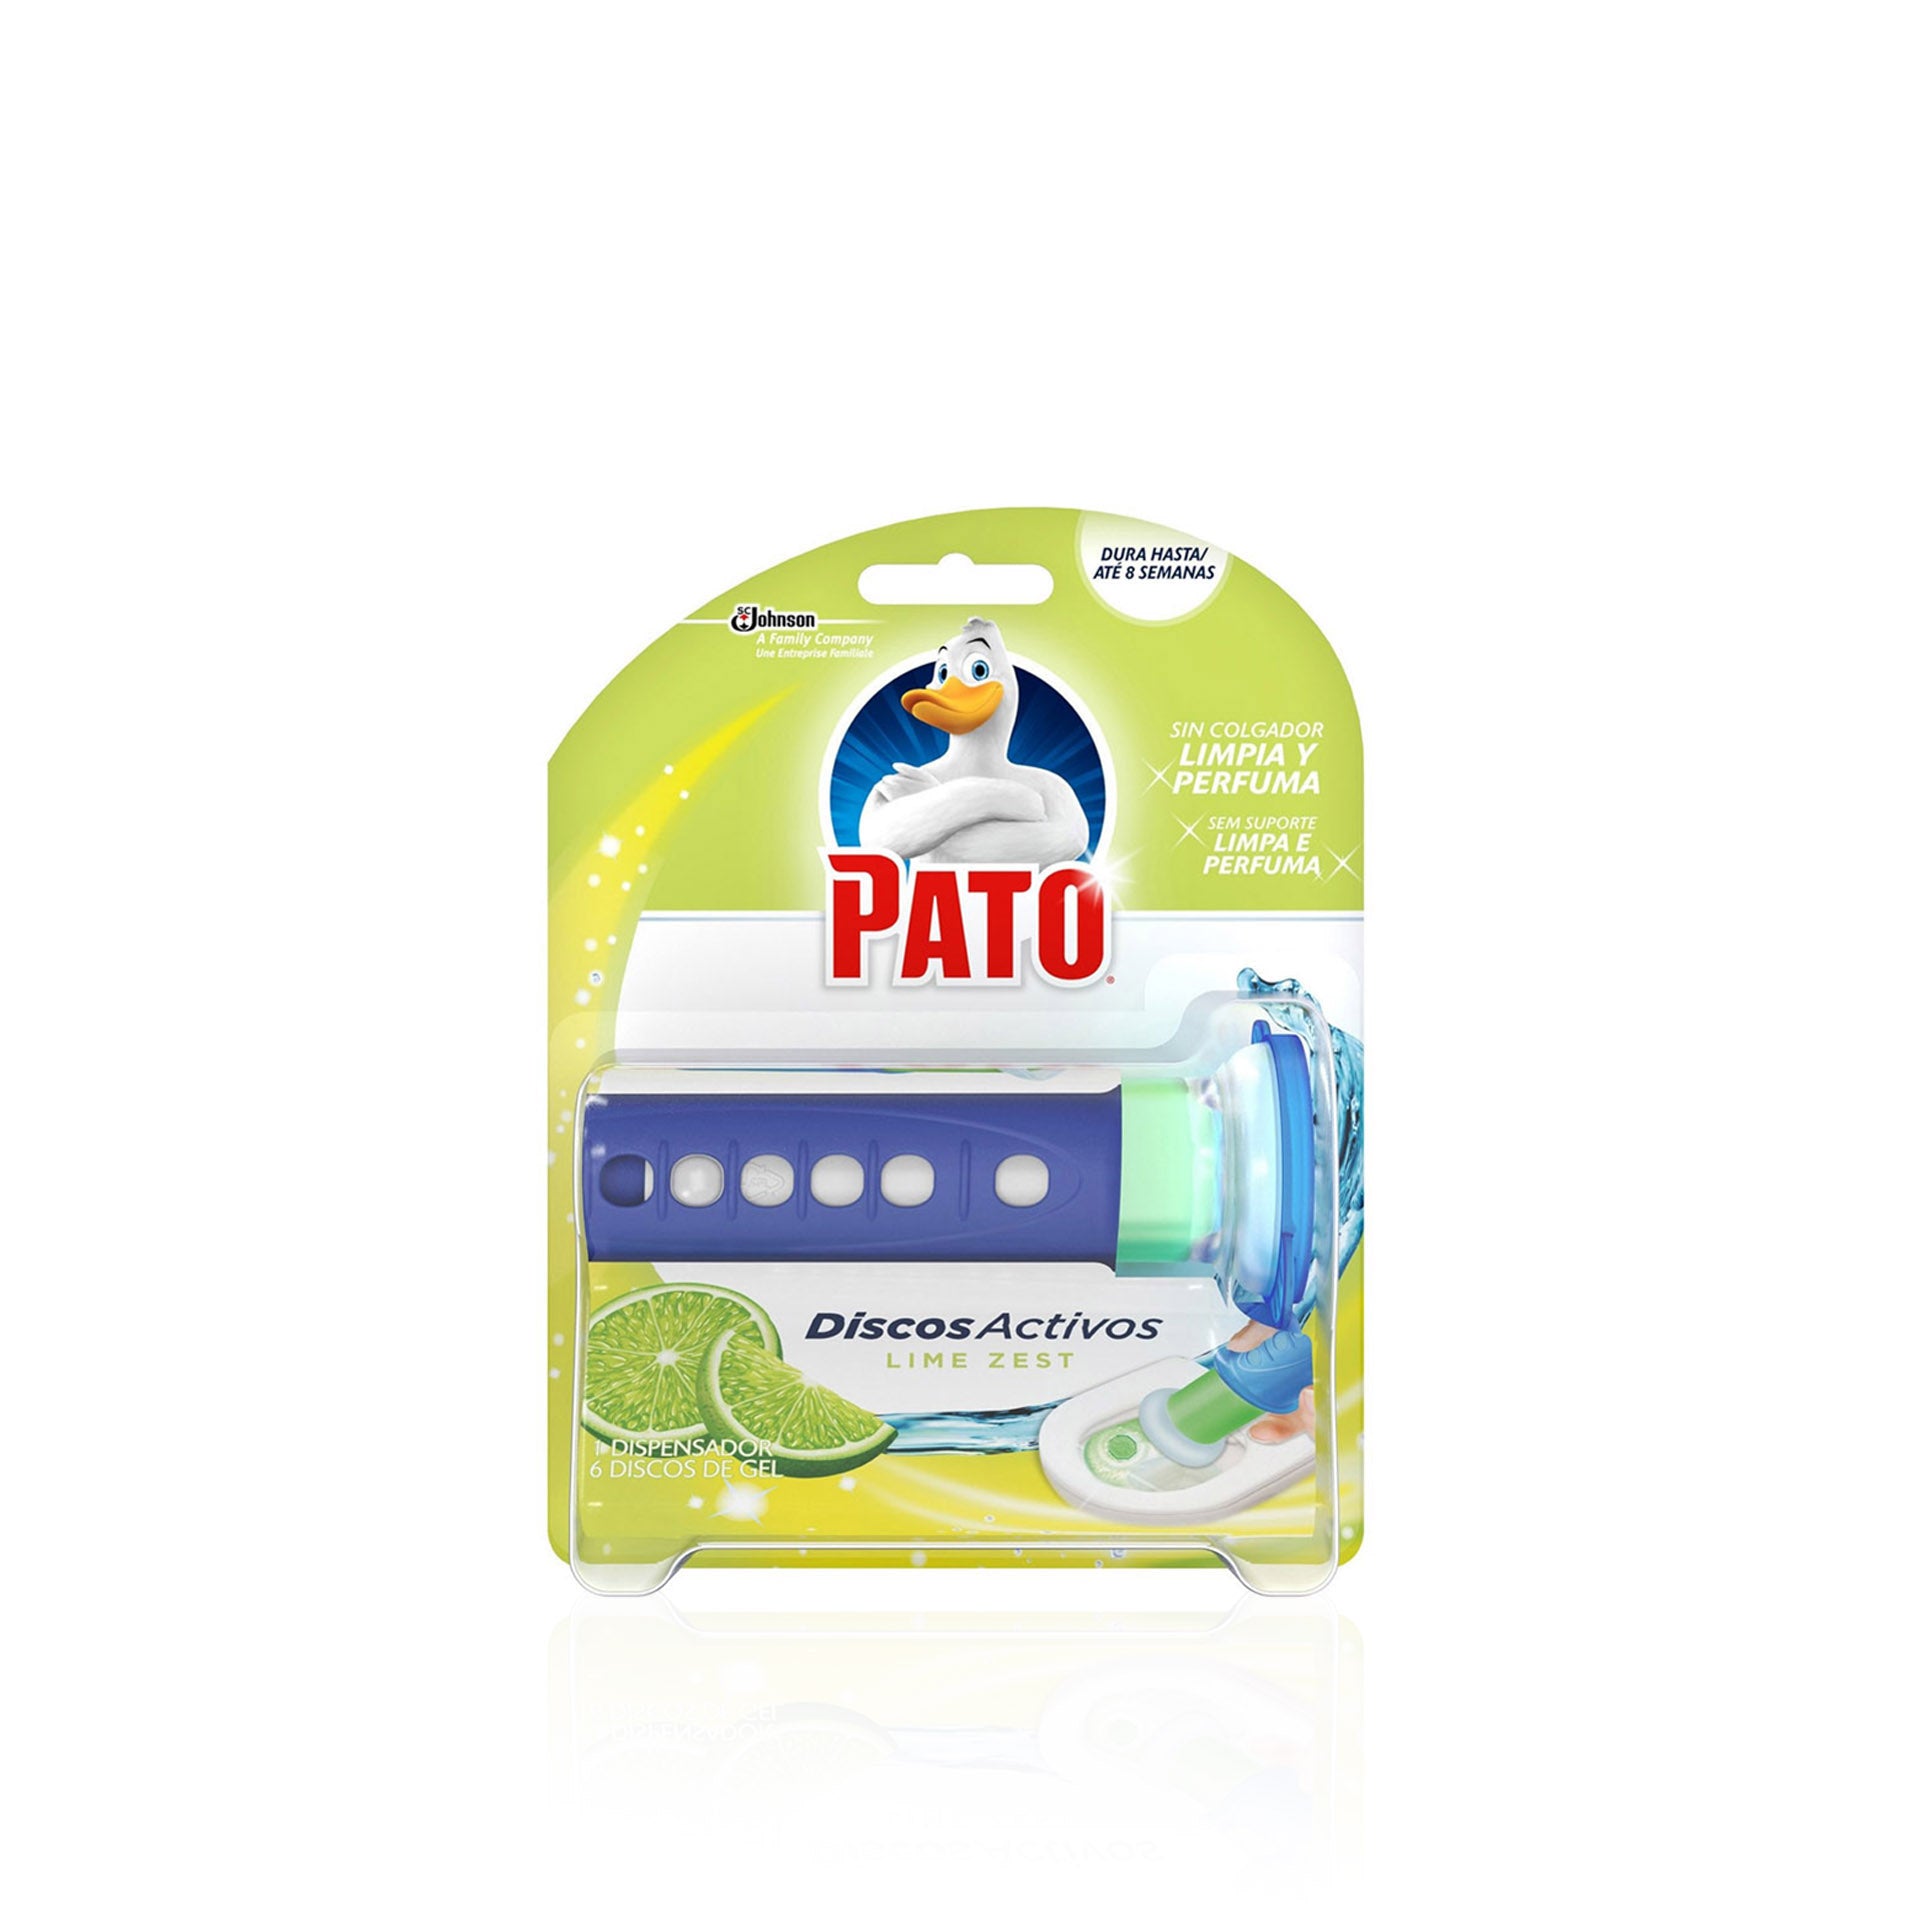 Pato Discos Activos Lima Dispositivo + 1 Recarga 36 ml